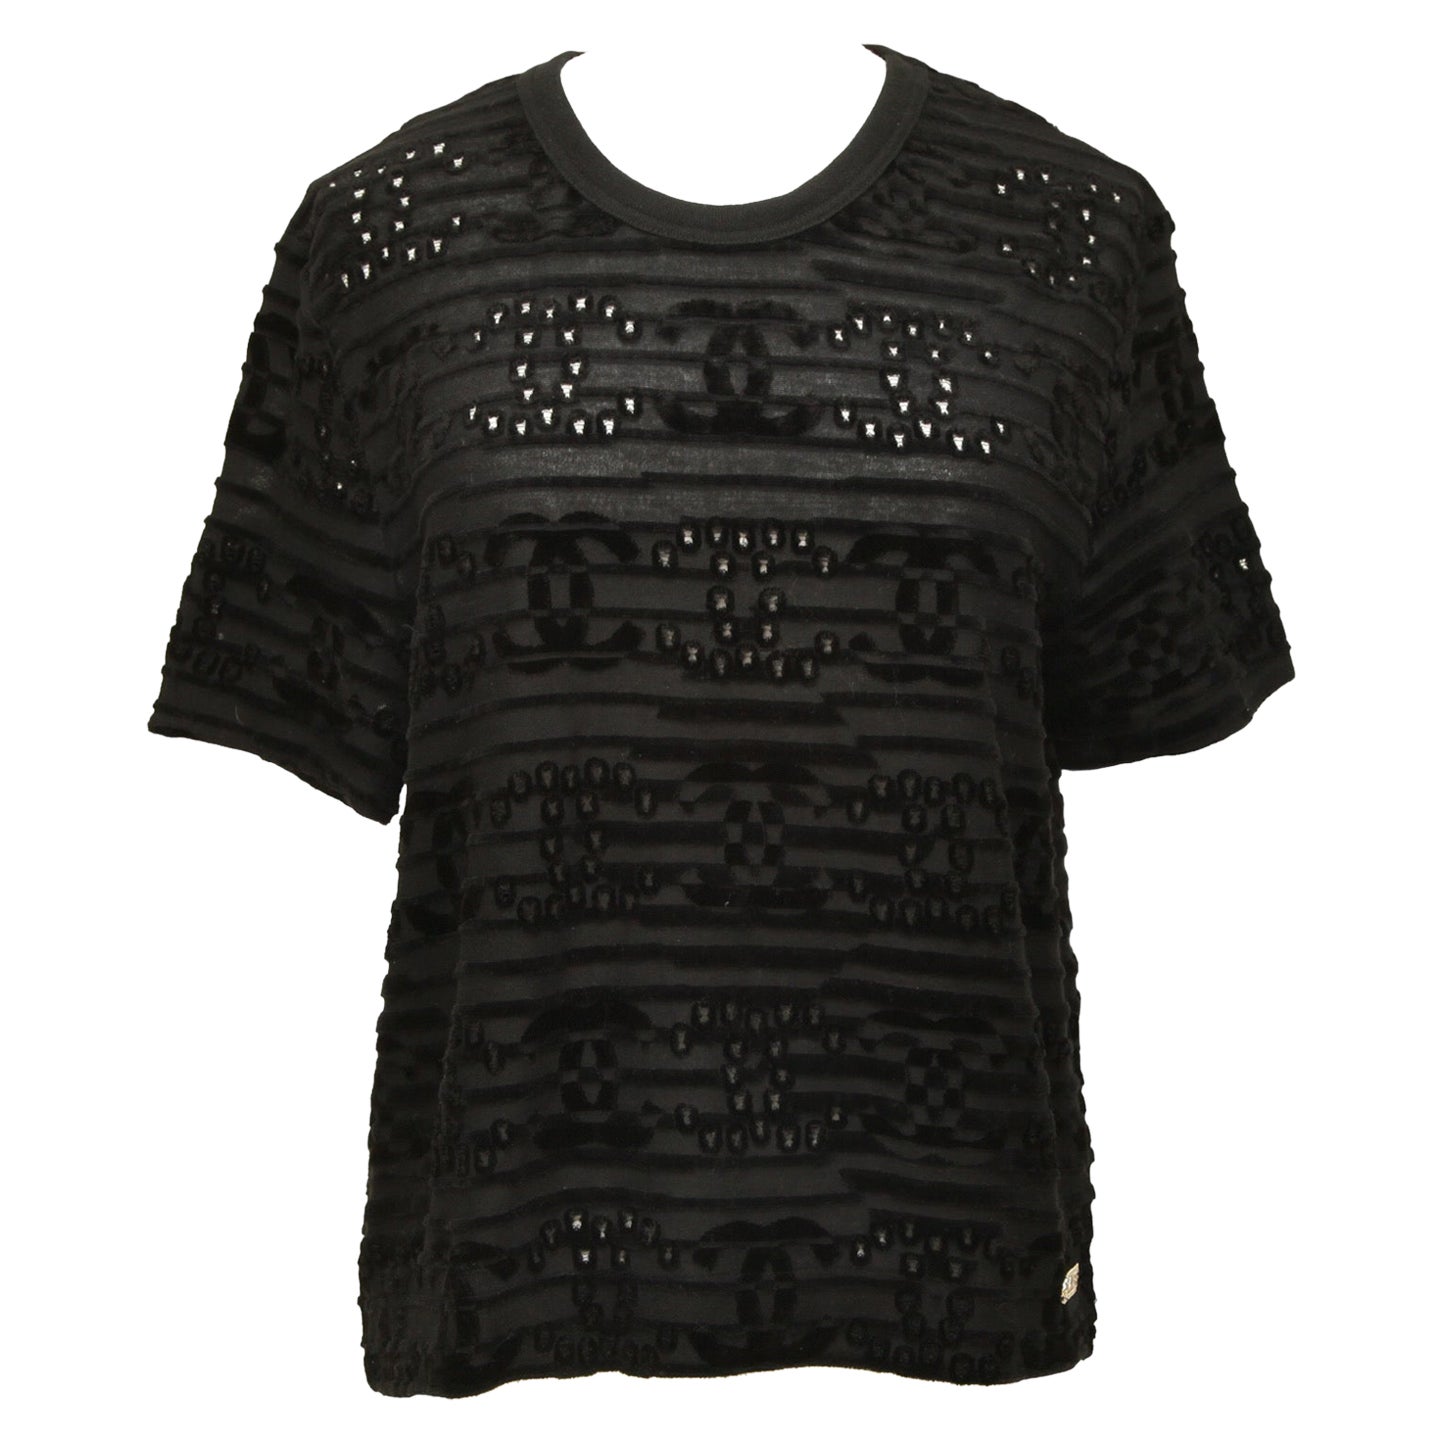 Chanel Top T-Shirt Black CC Short Sleeve Crew Neck Velvet Sz Xs 21C 2021 Nwt